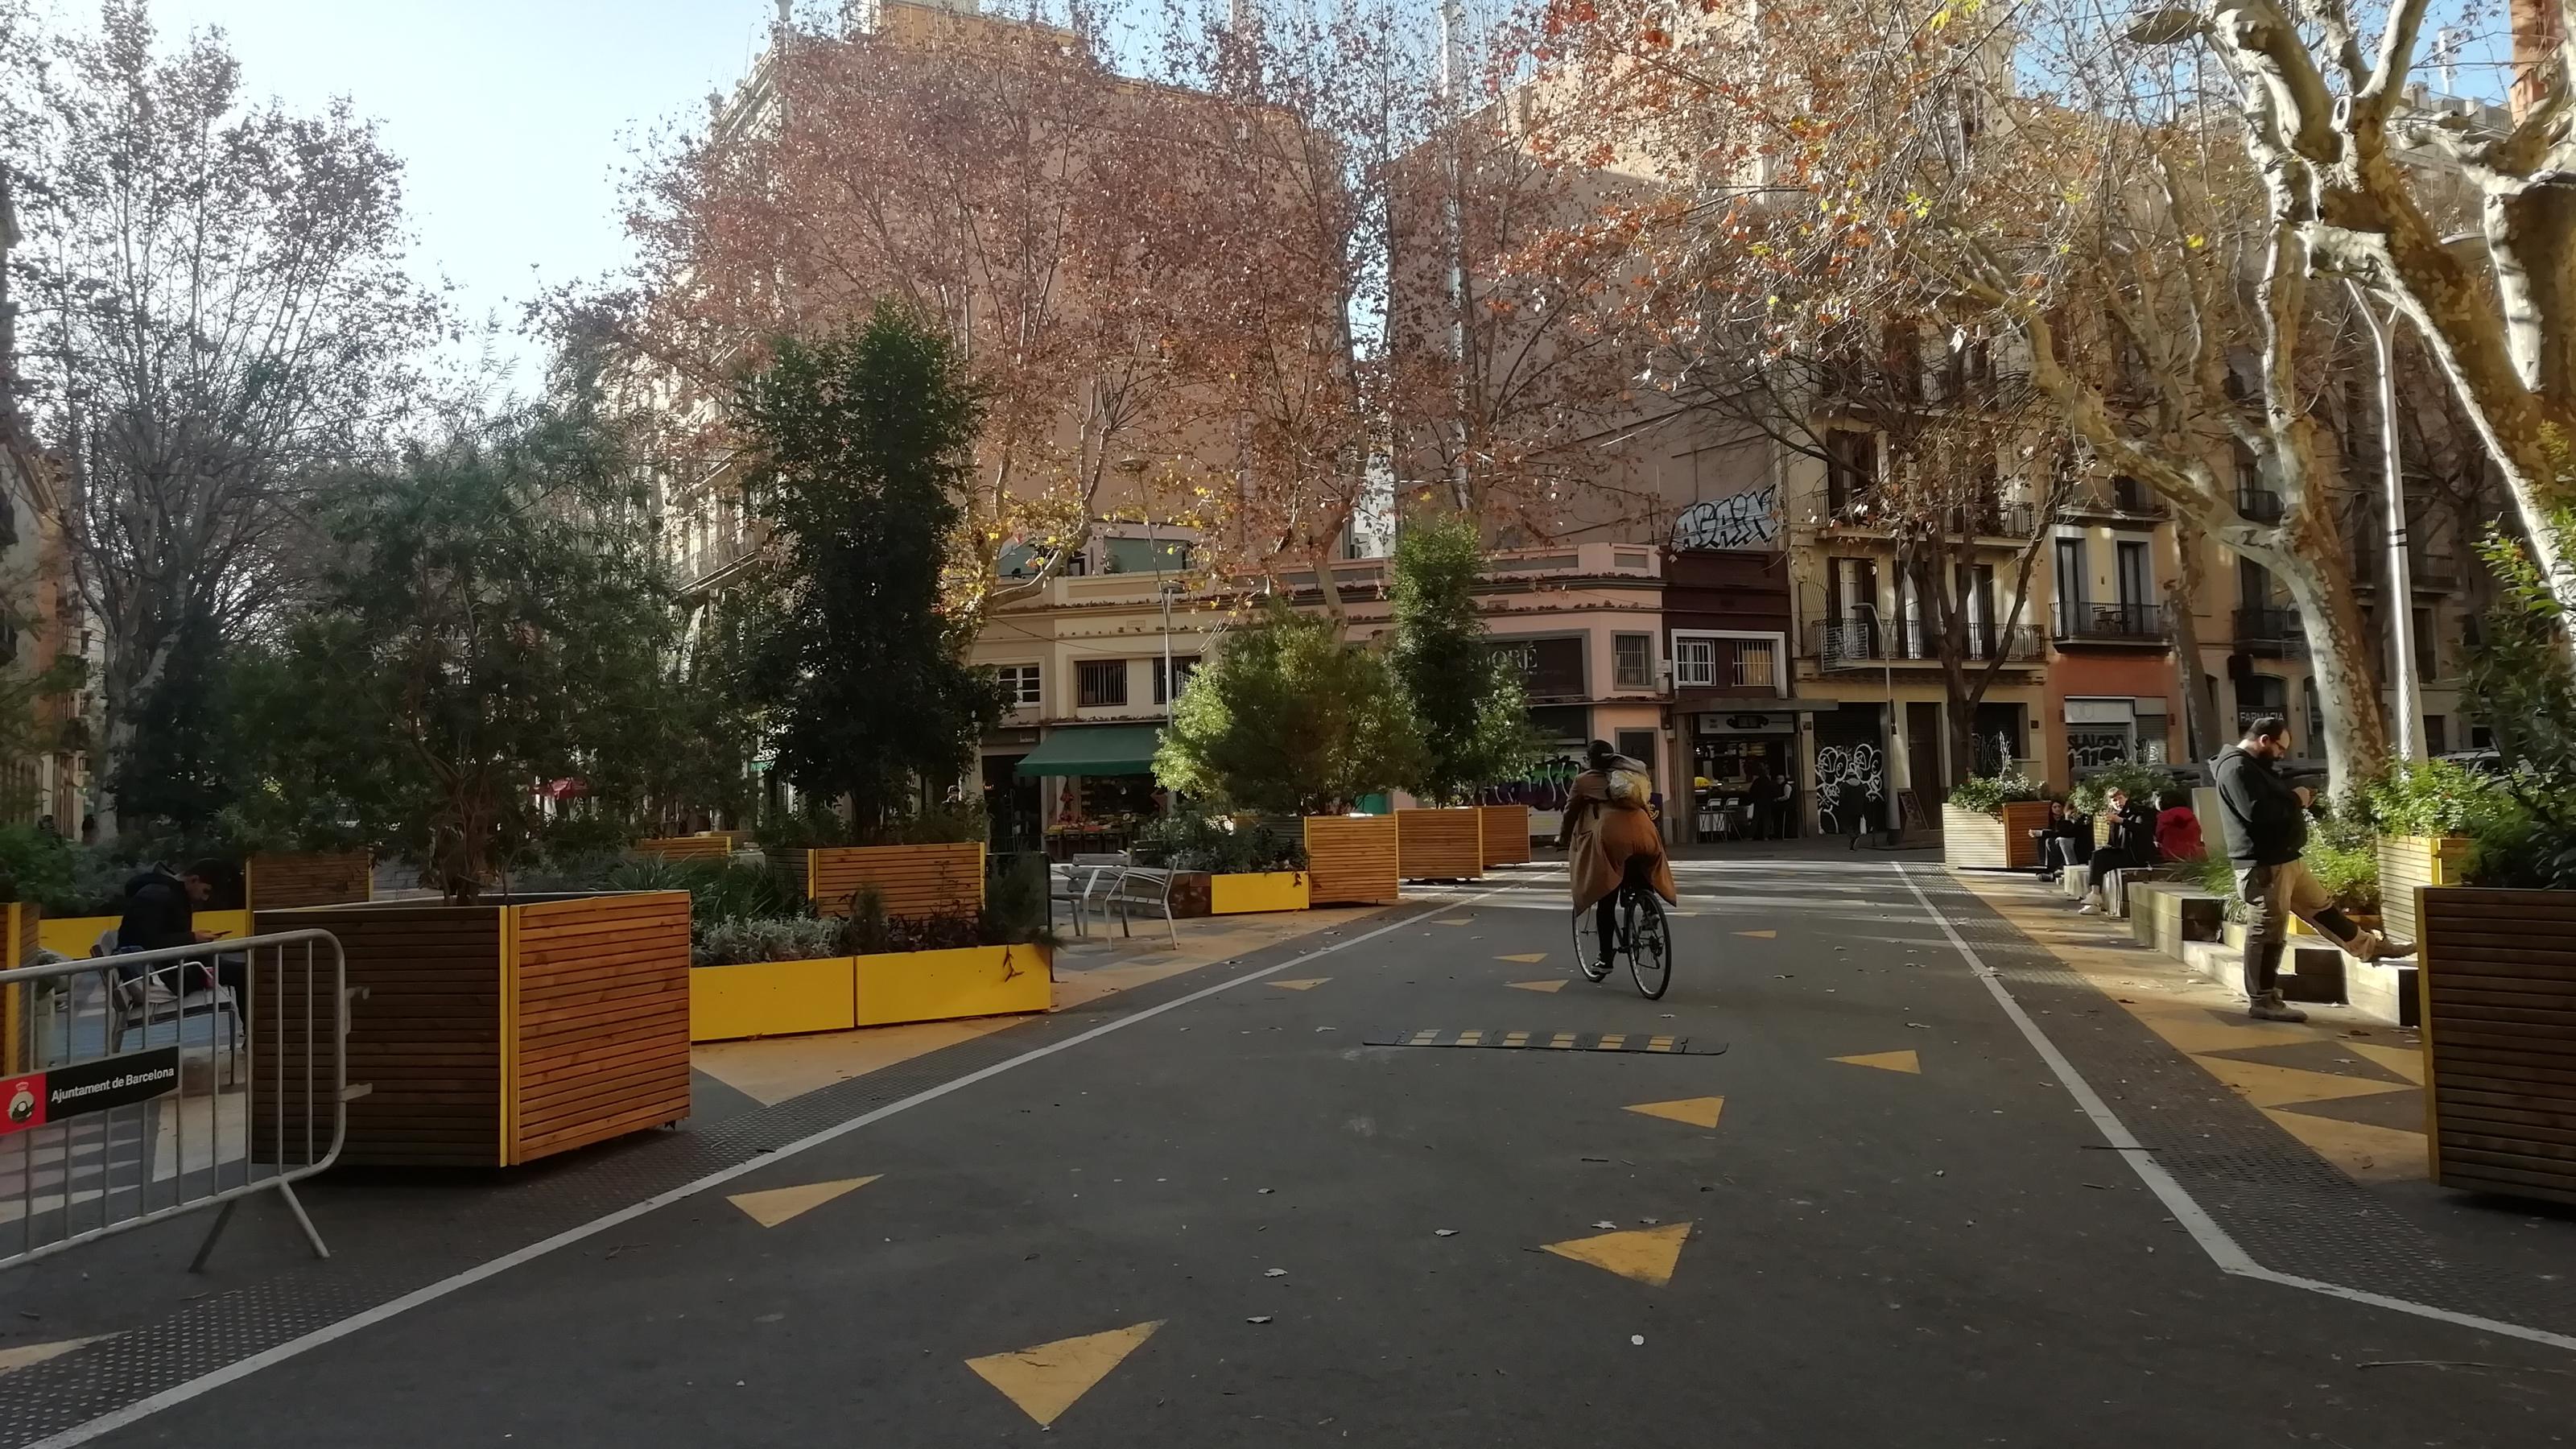 Blick auf die verkehrsberuhigte Superilla in Sant Antoni in Barcelona. Die Mitte der Straßenkreuzung ist mit Pflanzenkübeln für den Verkehr blockiert, drumherum stehen Holzbänke. Auf dem Boden sind gelbe Markierungen. Ein Radfahrer fährt über die Straße.